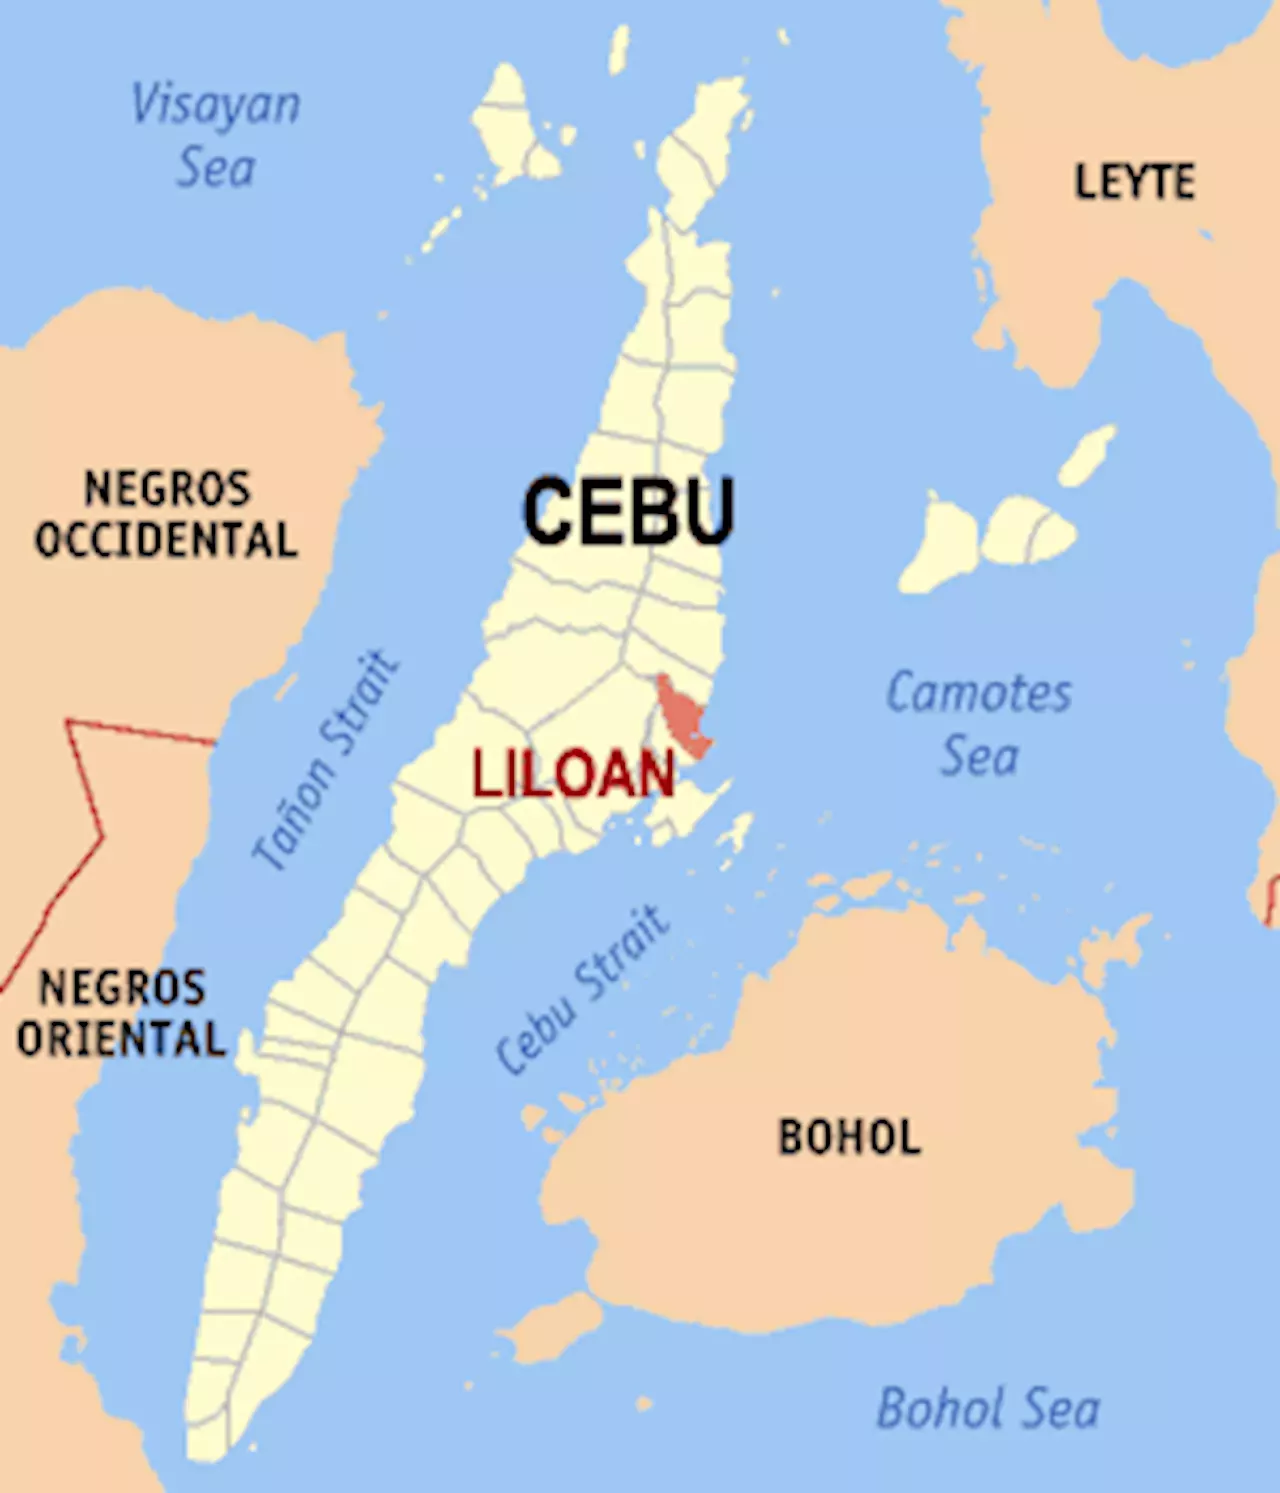 10 teenage gang members held following rumble in Cebu | Philippines ...